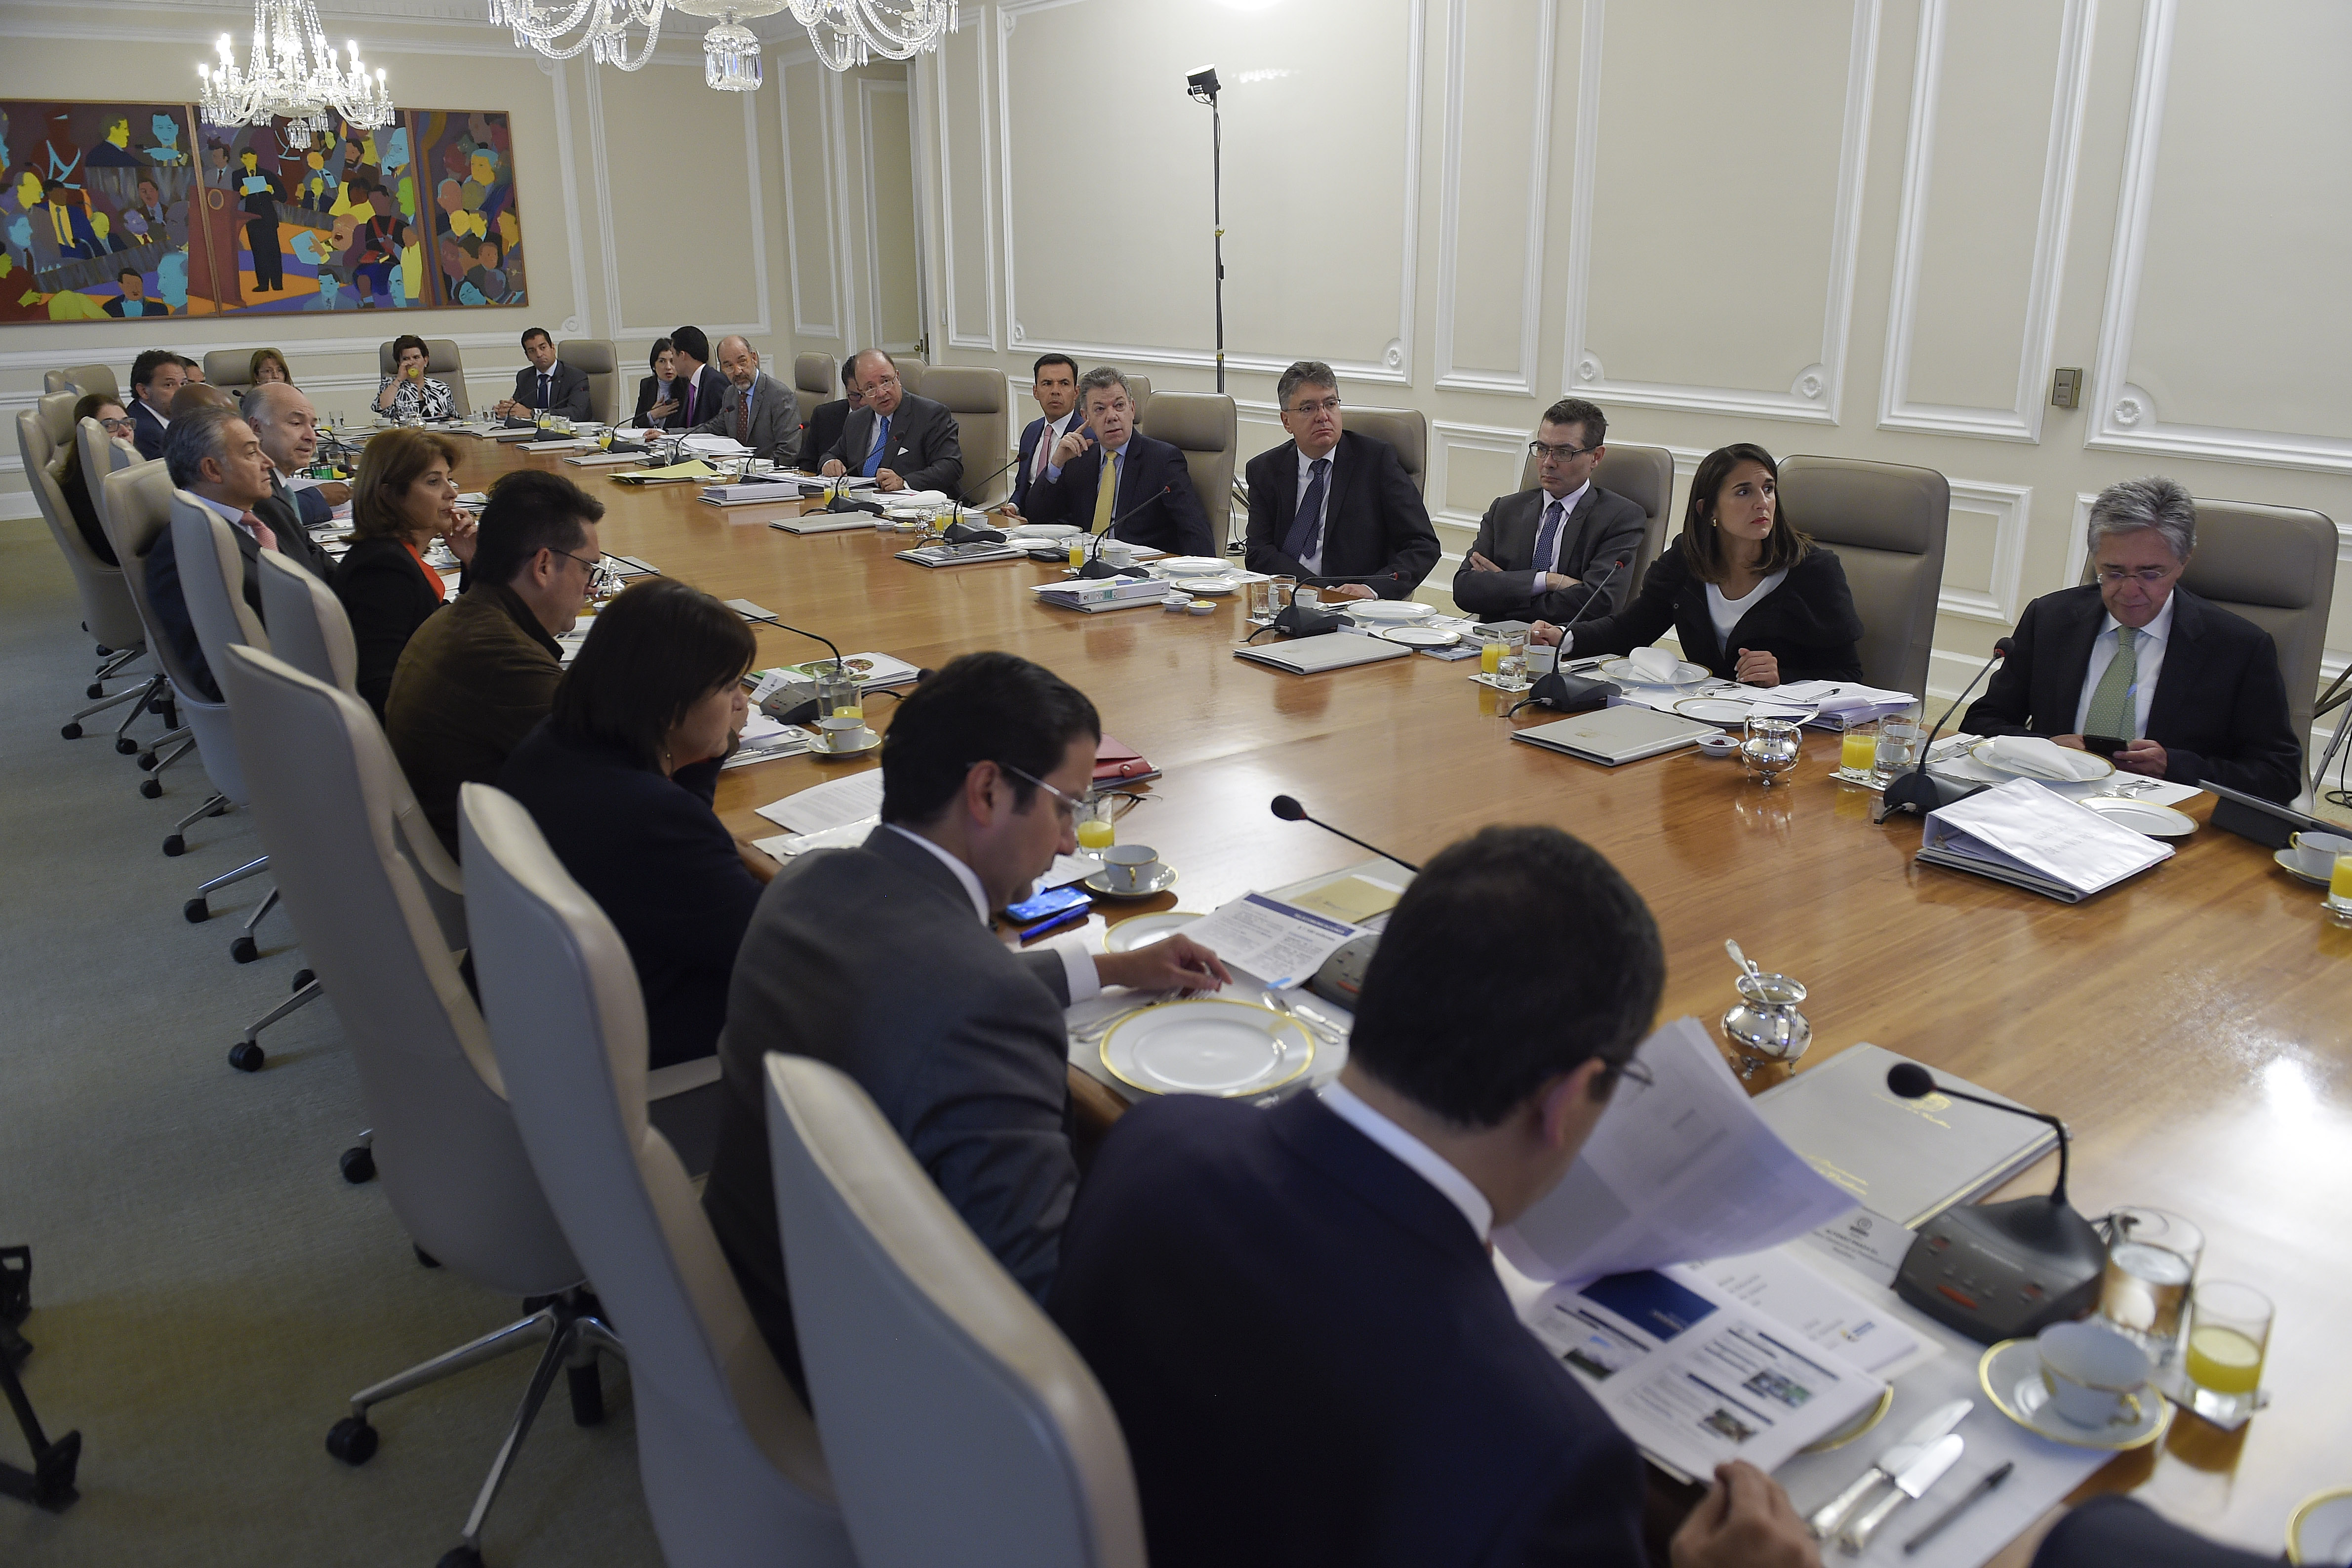 Canciller Holguín participó en un nuevo Consejo de Ministros liderado por el Presidente Santos